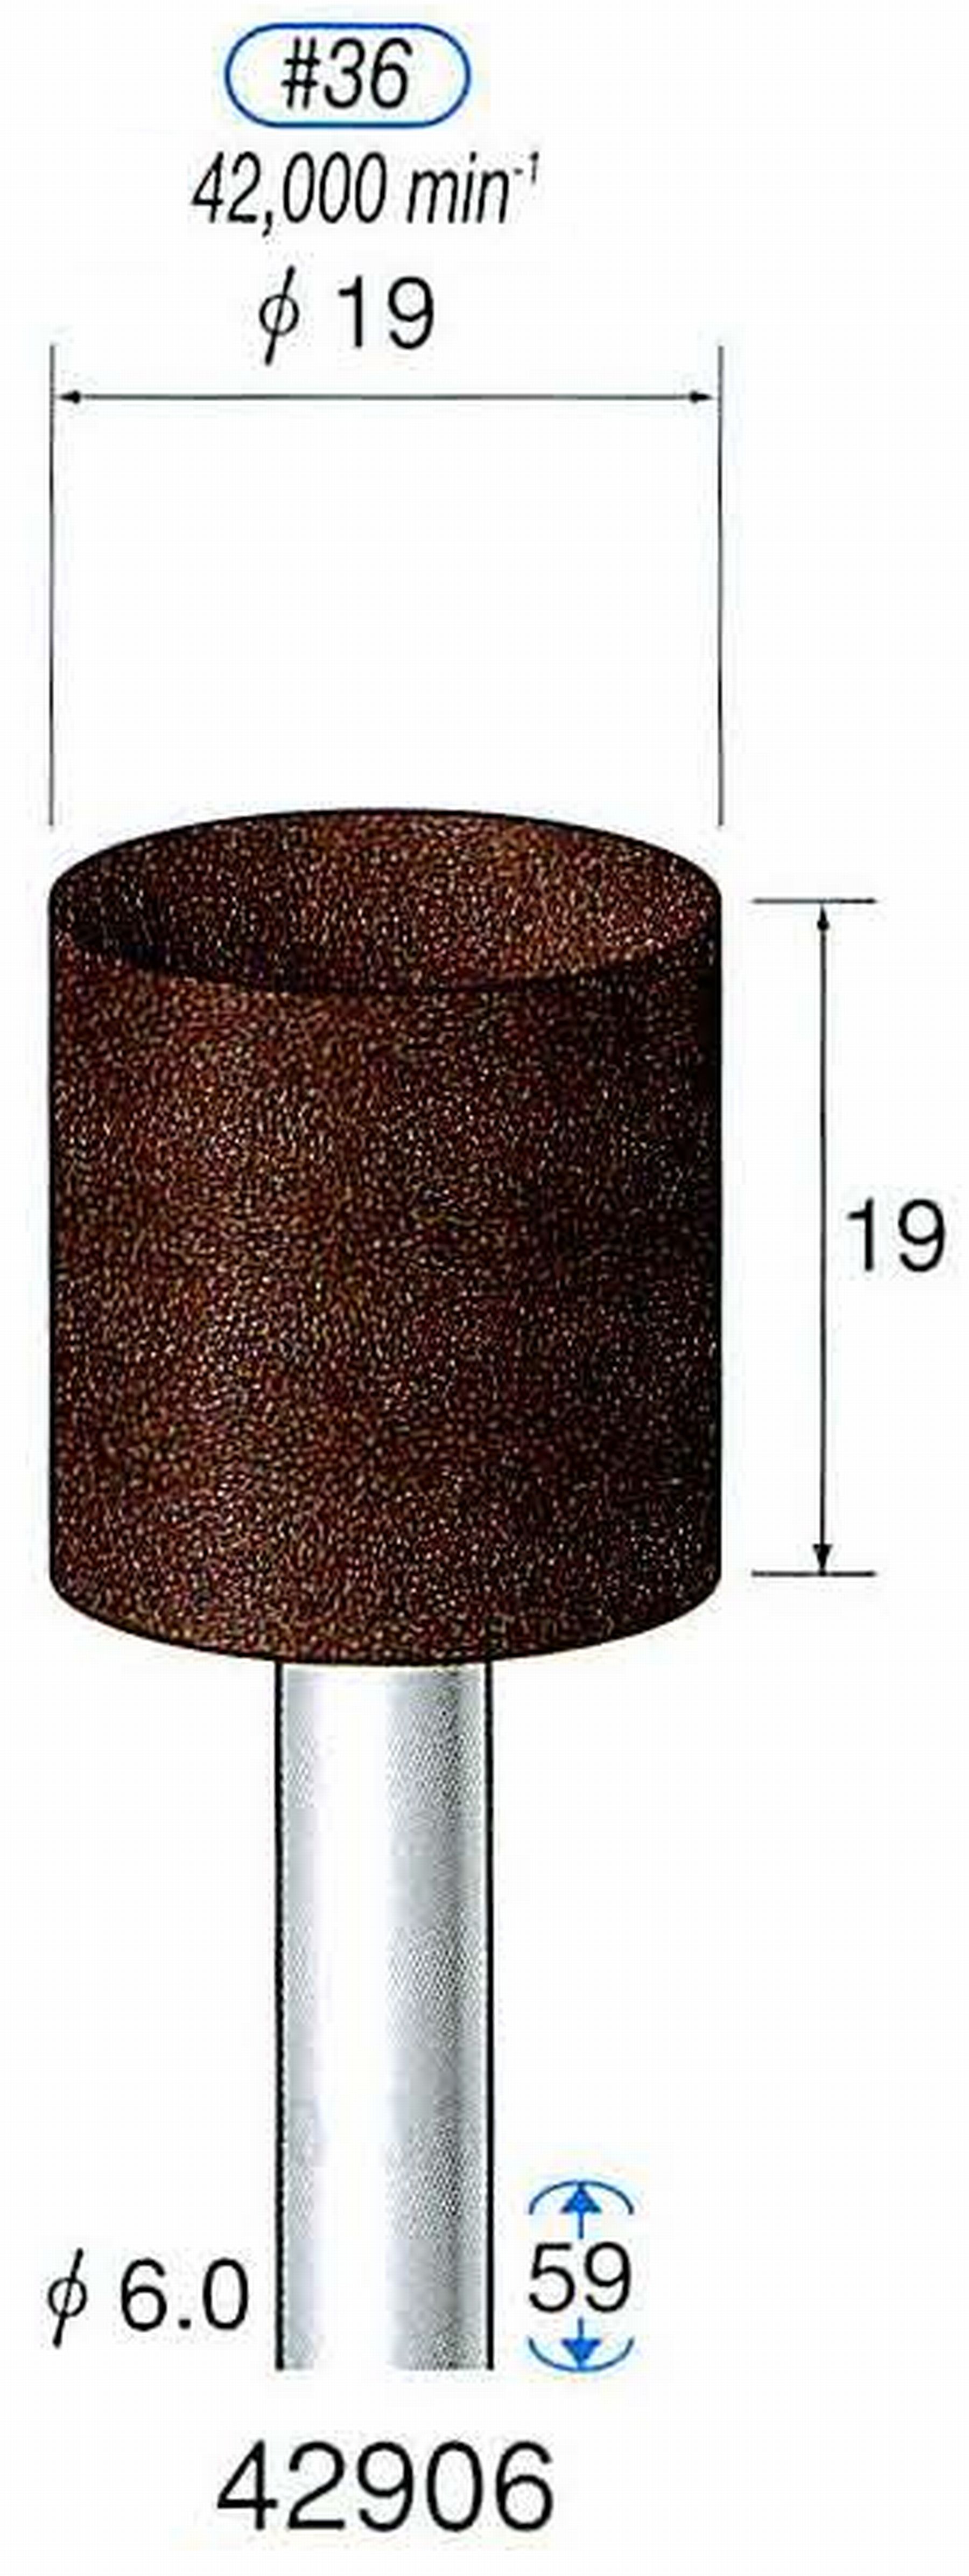 ナカニシ/NAKANISHI 軸付砥石(A・WA砥粒) ブラウン砥石 軸径(シャンク) φ6.0mm 42906